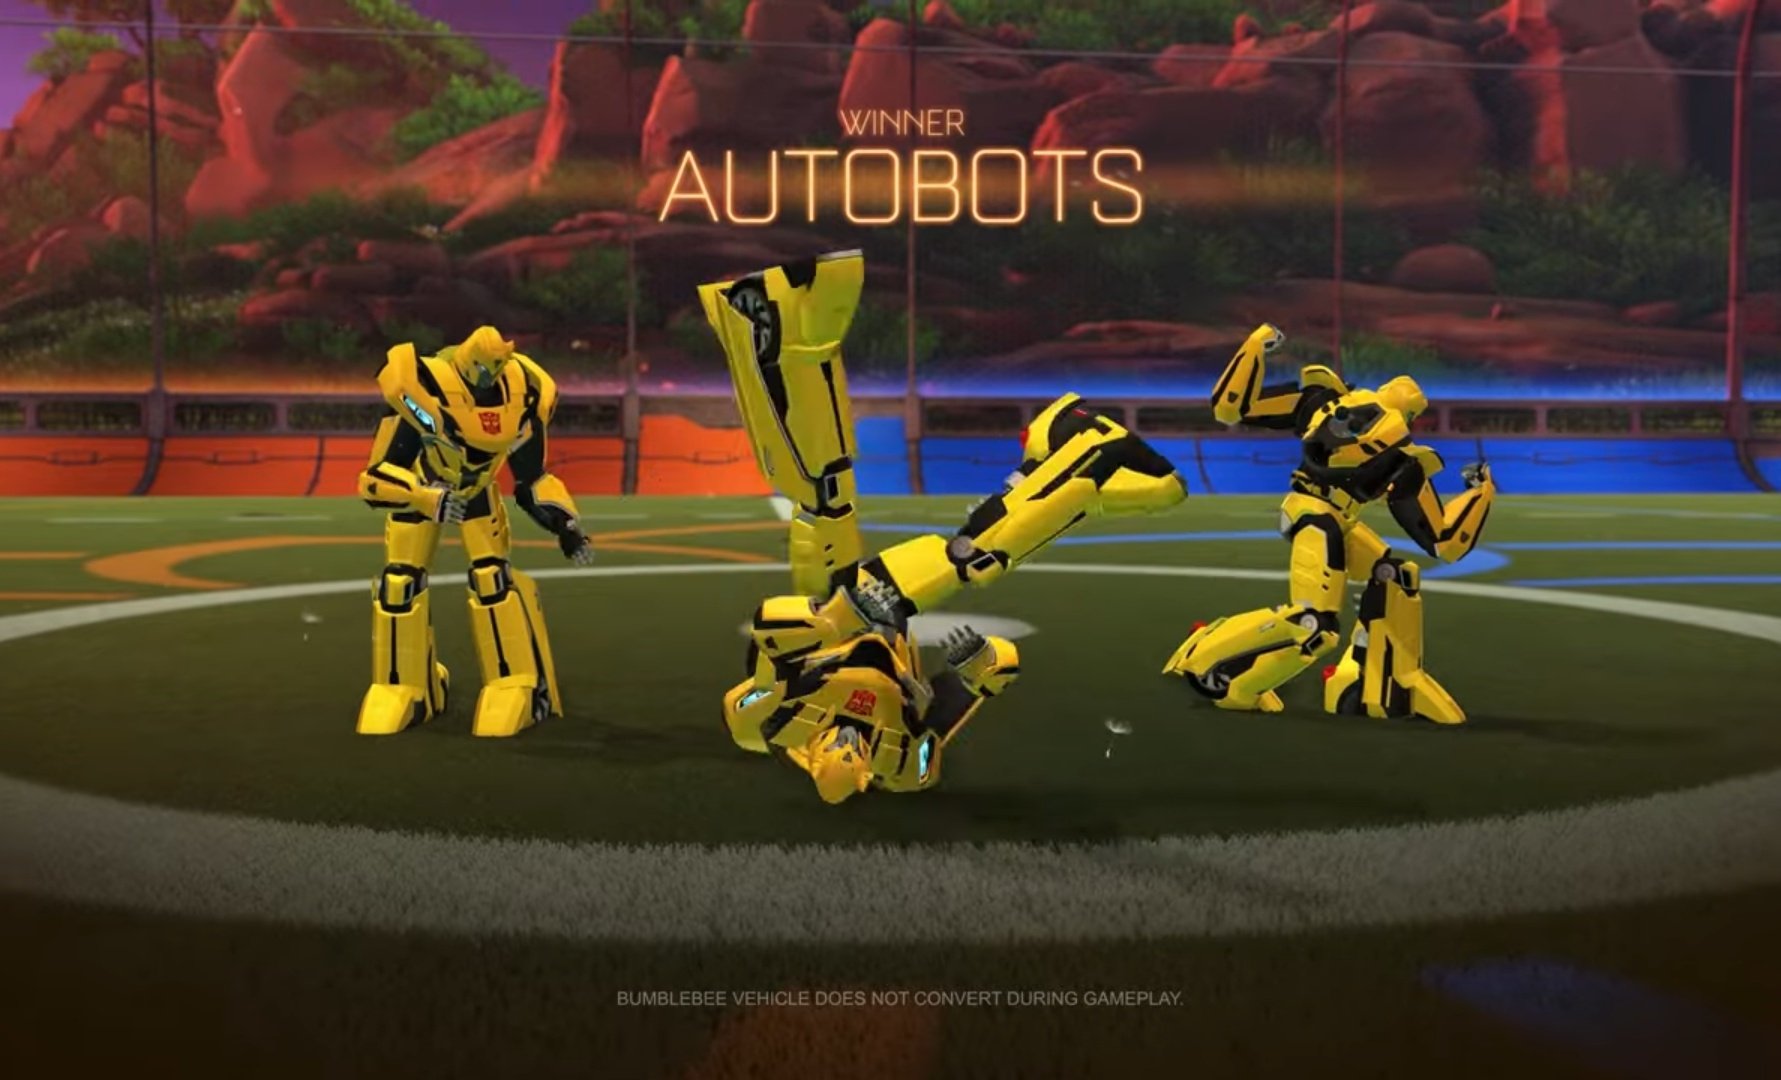 Rocket League X Transformers, la nueva colaboración de los autos futboleros. 11